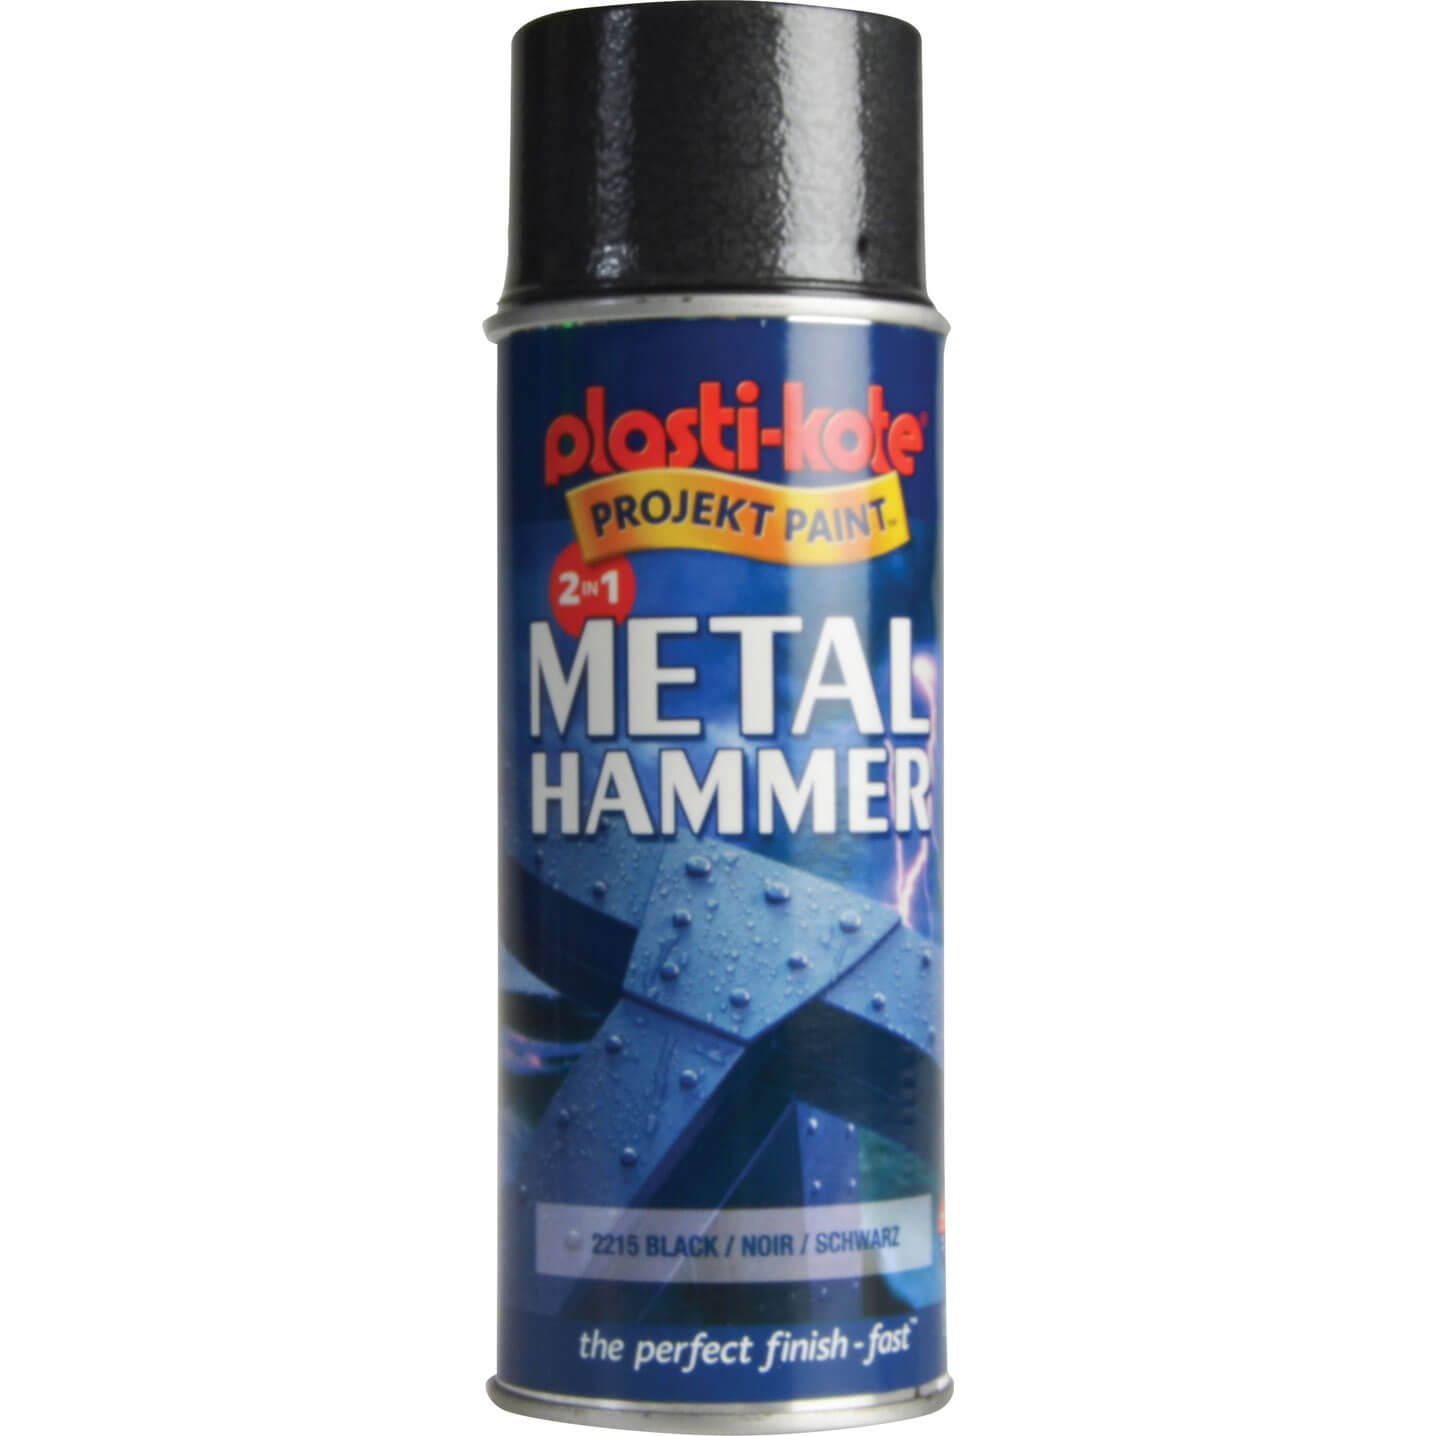 Plastikote Metal Paint Hammer Aerosol Spray Paint Black 400ml